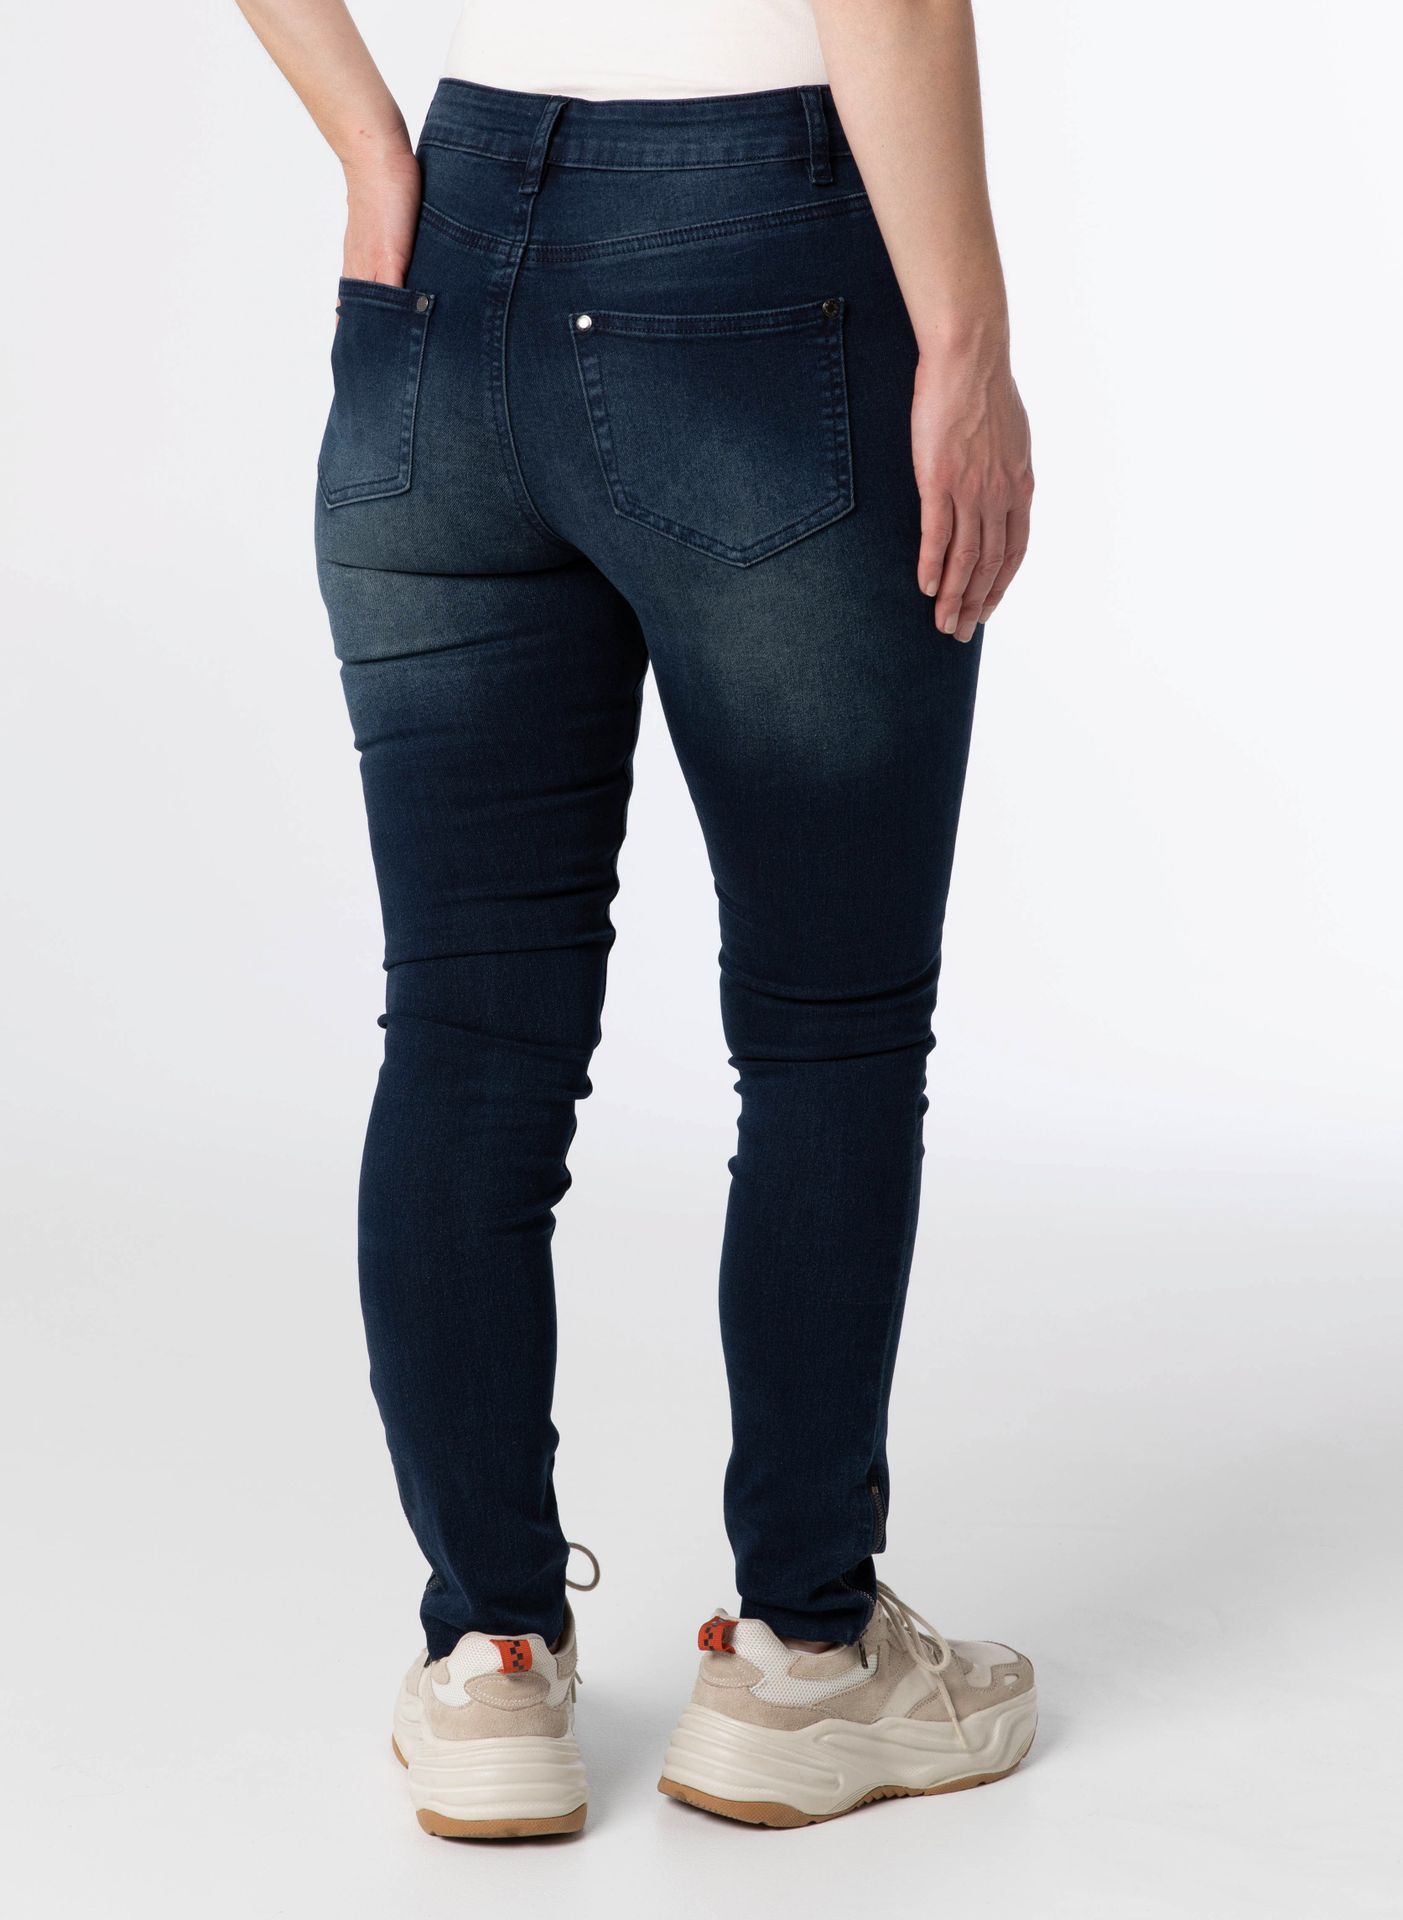 flexibel Stap inch Denim Broek Jeans Spijkerbroek | Norah